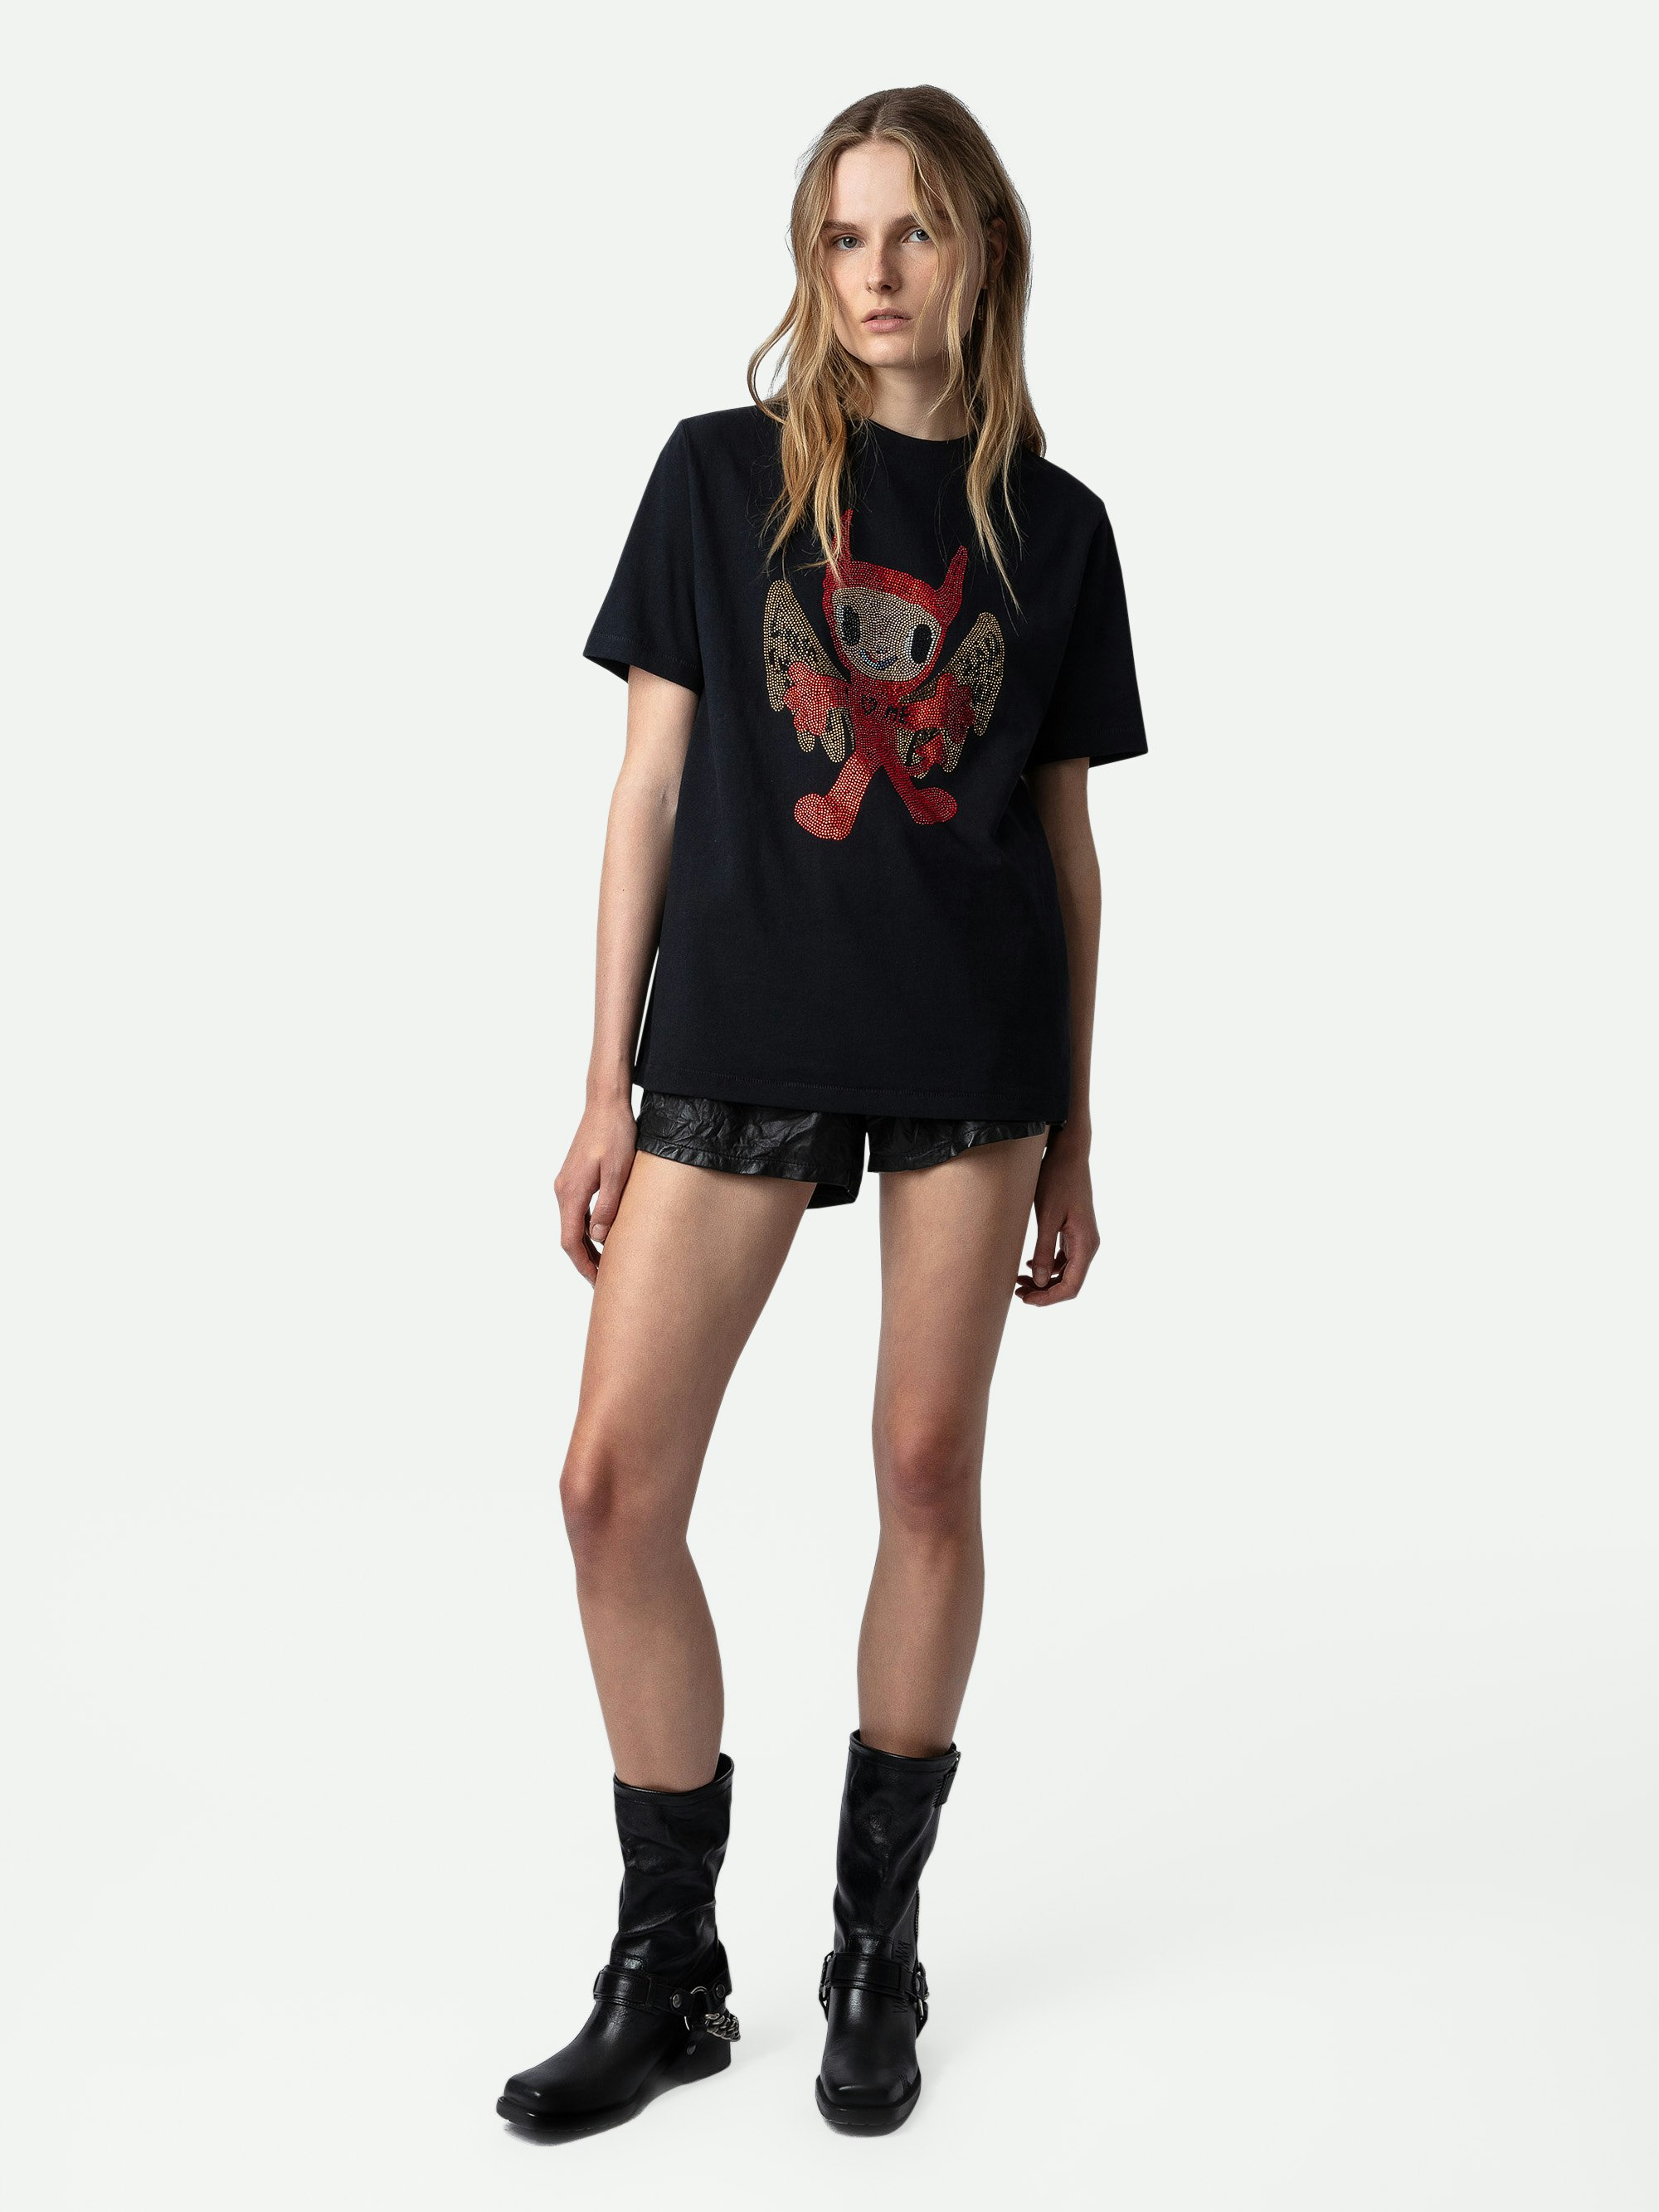 T-shirt Edwin Devil Strass - T-shirt in cotone nero girocollo con maniche corte, strass e personalizzazioni create da Humberto Cruz.